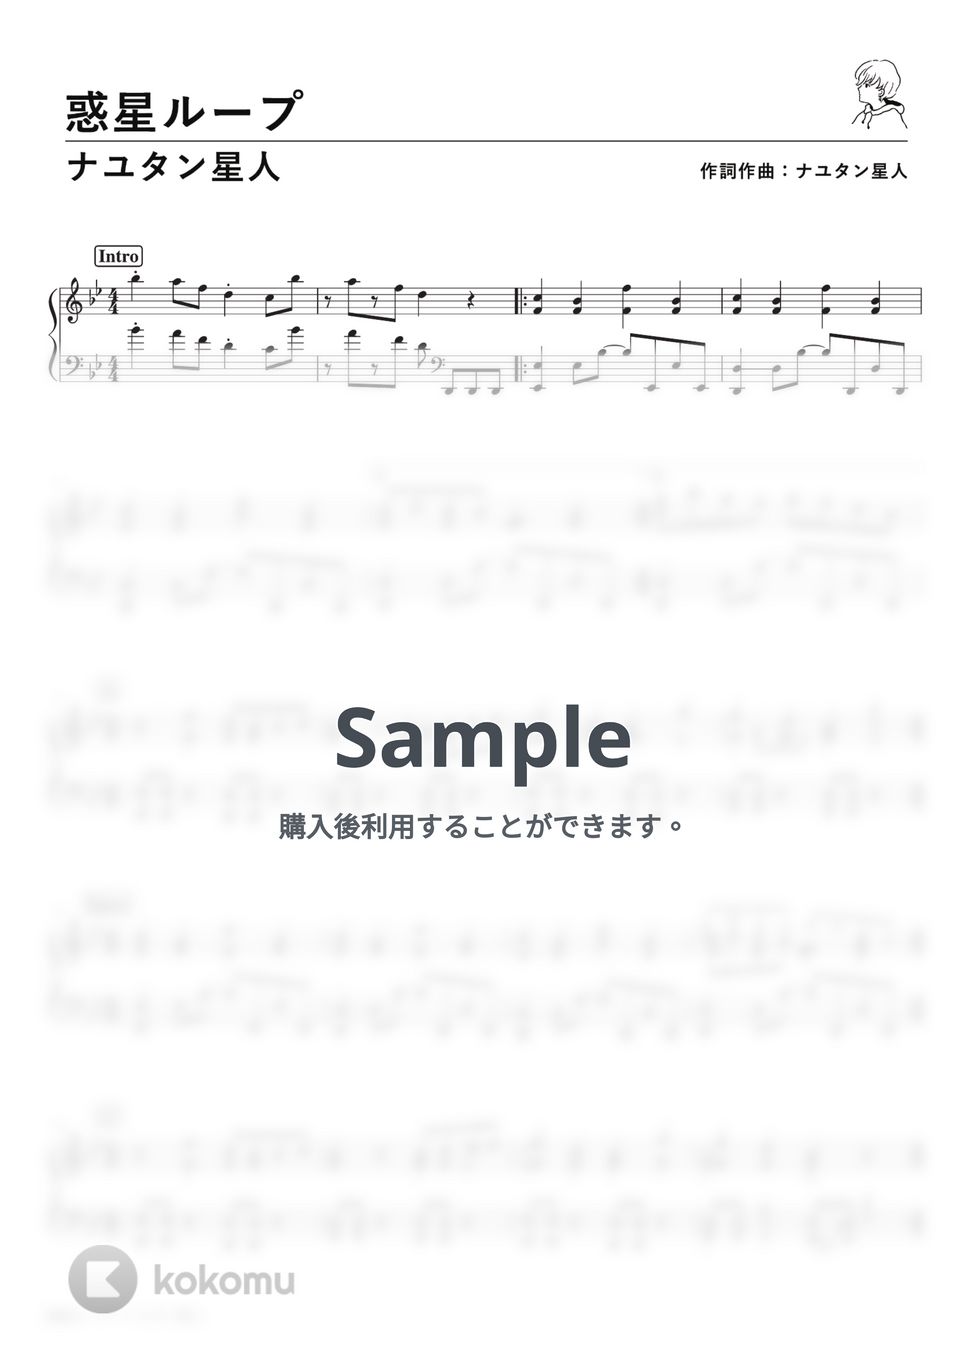 ナユタン星人 - 惑星ループ (PianoSolo) by 深根 / Fukane